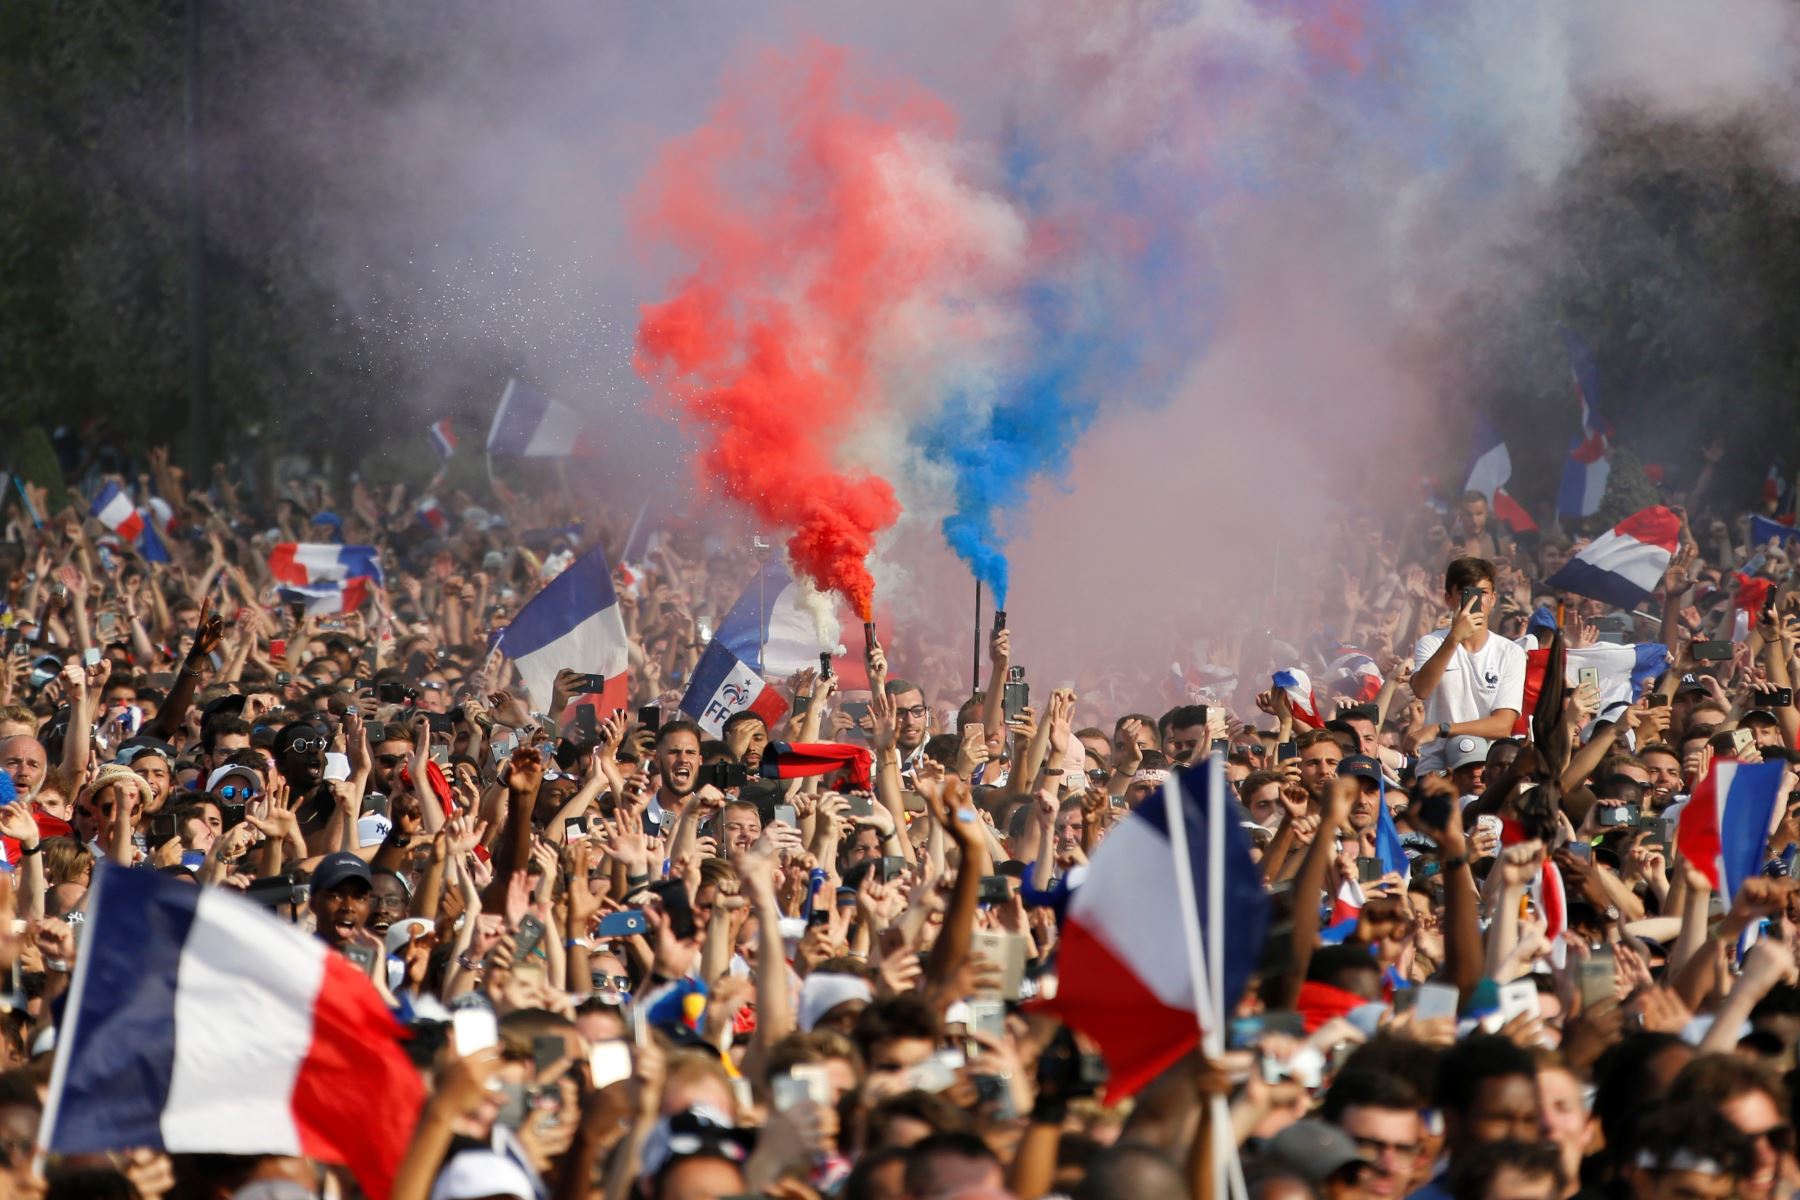 Partidarios de Francia celebran en la zona de aficionados, después de que Francia ganó el partido de fútbol final de la Copa Mundial Rusia 2018.Foto:AFP